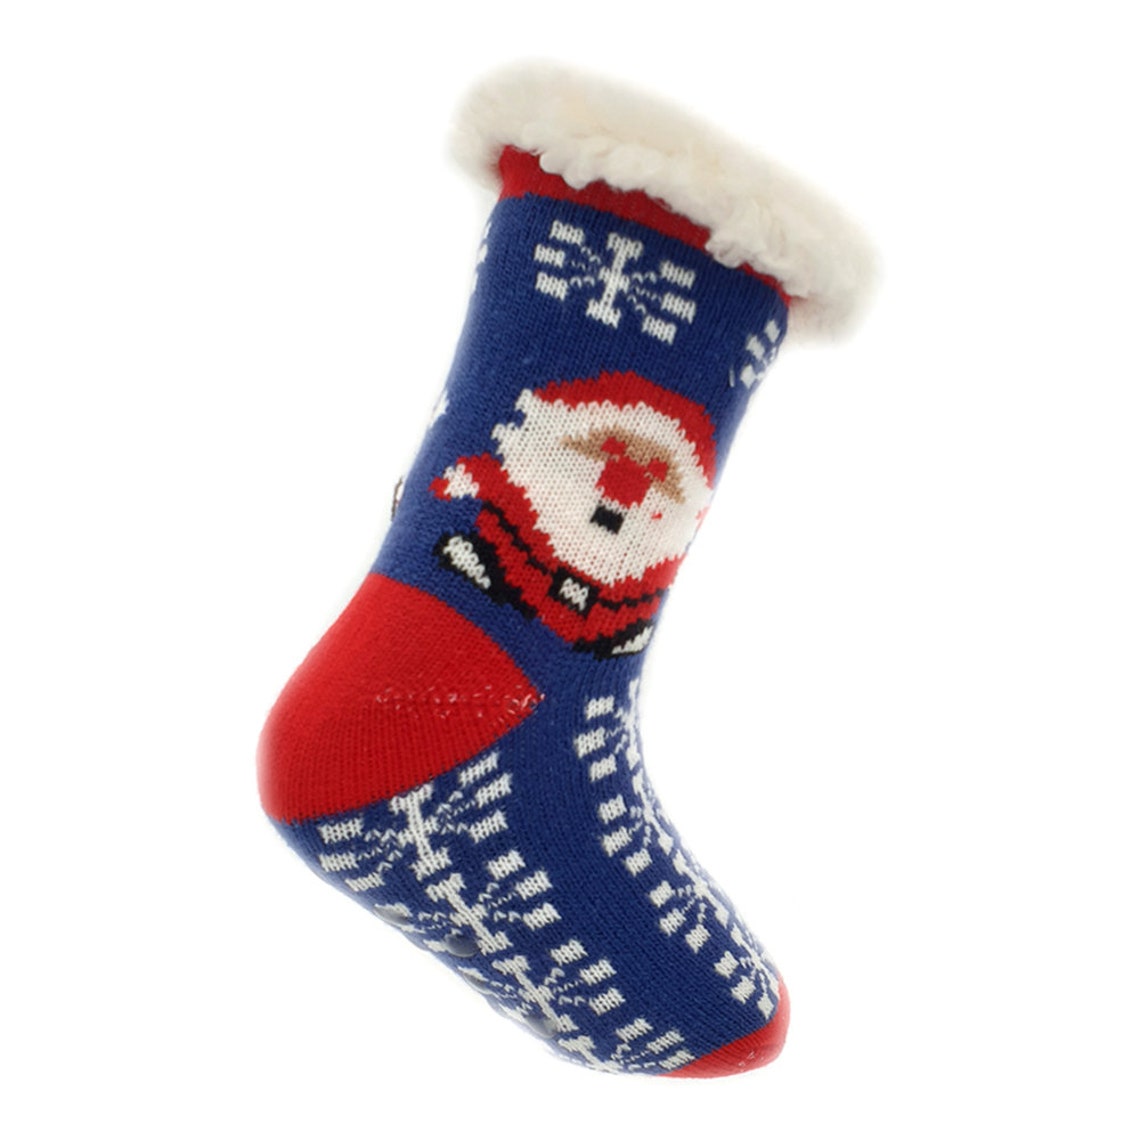 Children's Socks With Santa Claus Non-slip N5597 BLE - Etsy